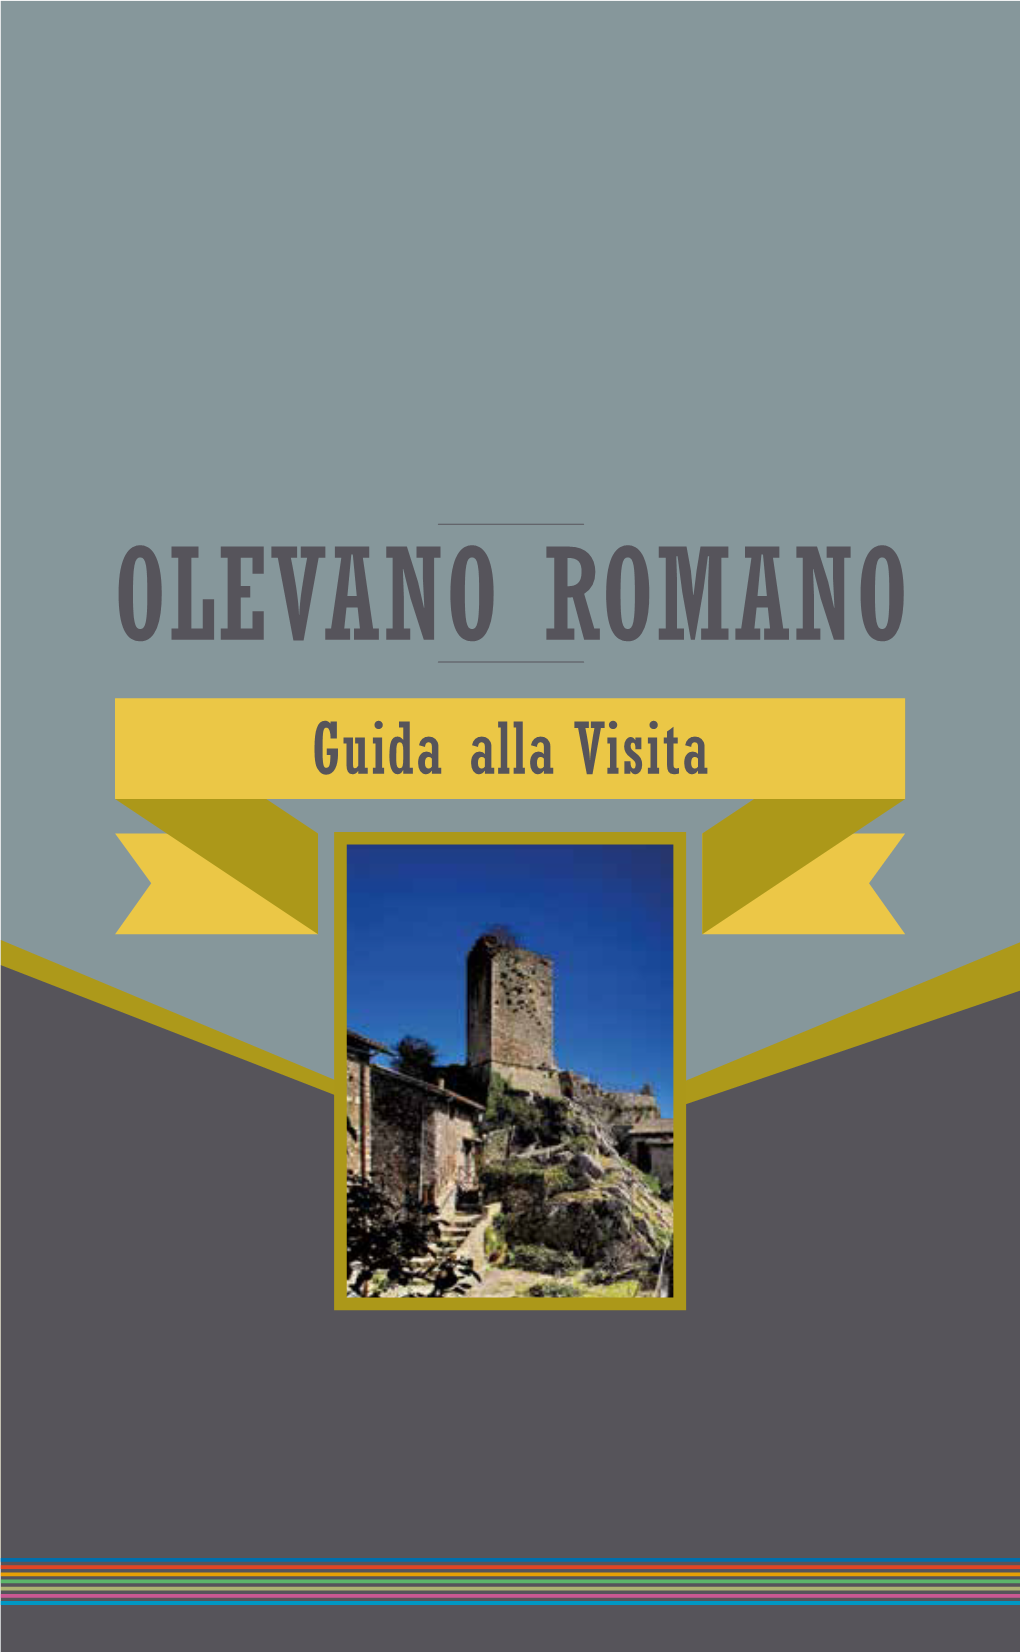 OLEVANO ROMANO Guida Alla Visita GUIDA GUIDA ROMANO ALLA VISITA OLEVANO